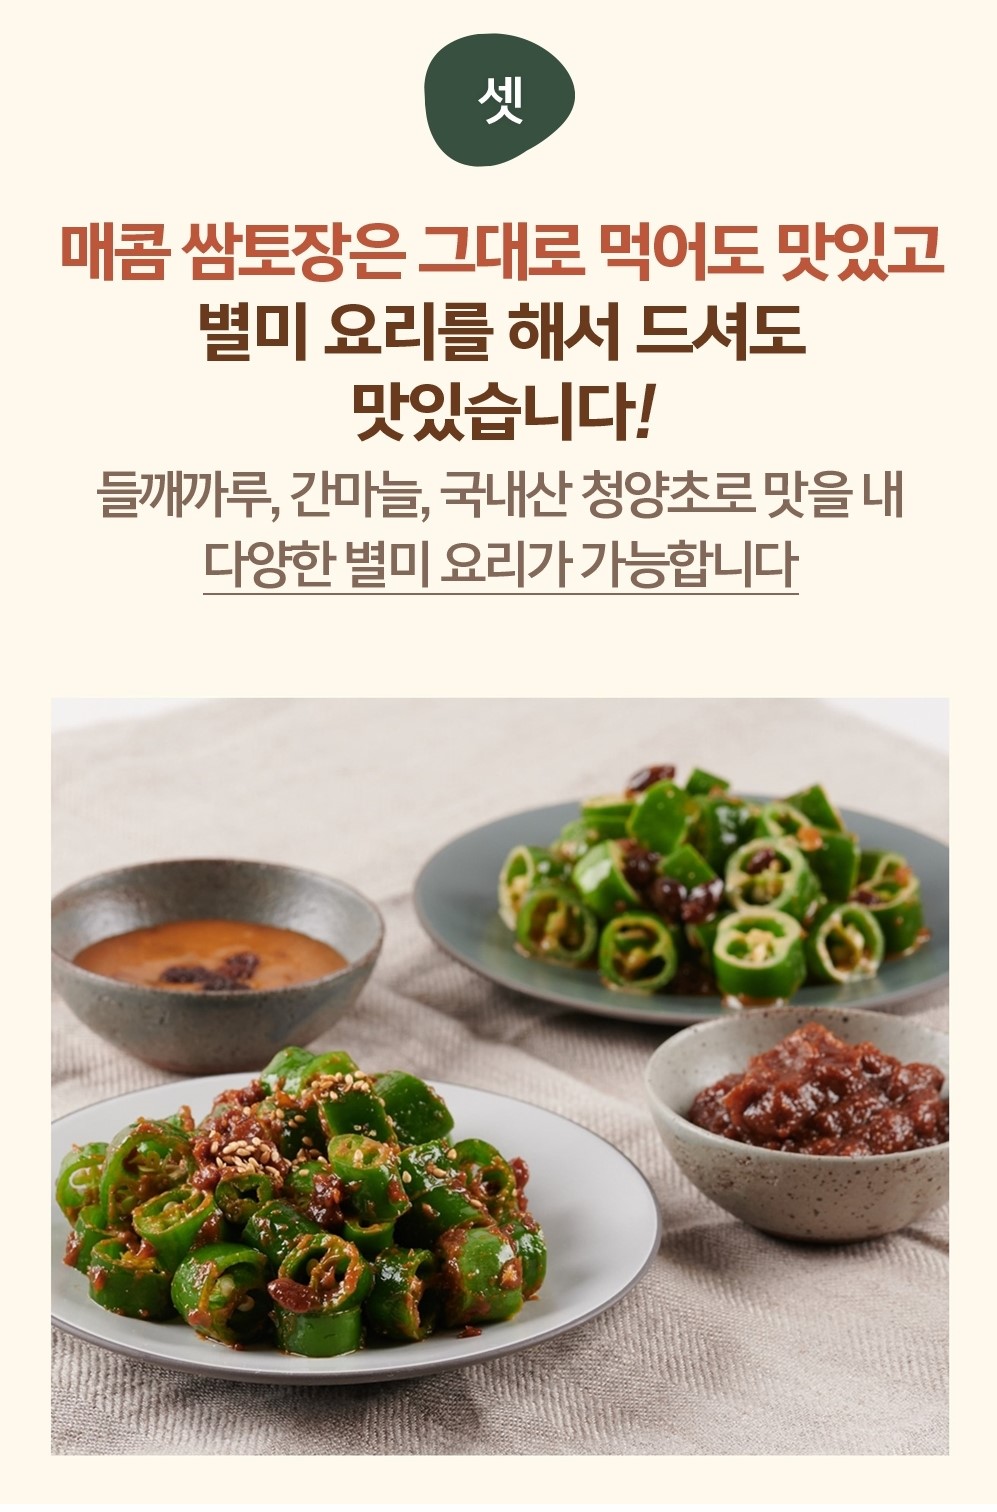 韓國食品-[Sempio] Tujang Spicy Saamjang 170g